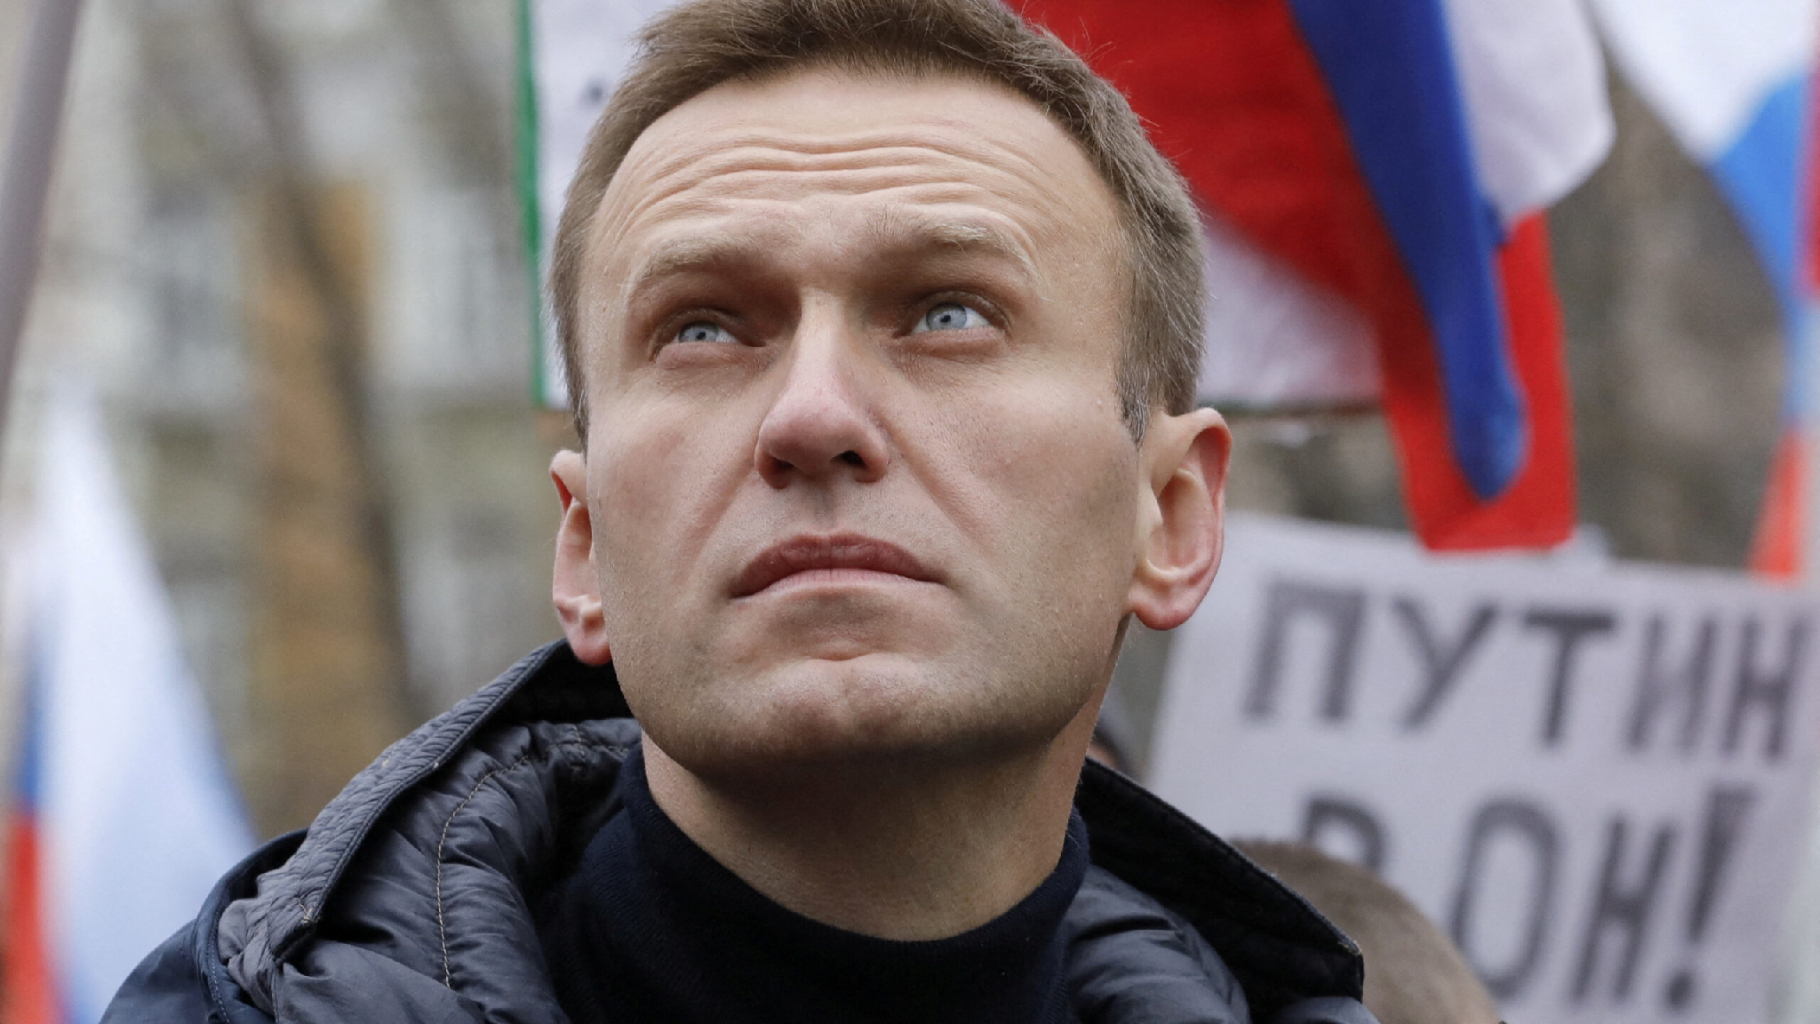 Contro la paura, le parole di Navalny e la sua eredità di speranza